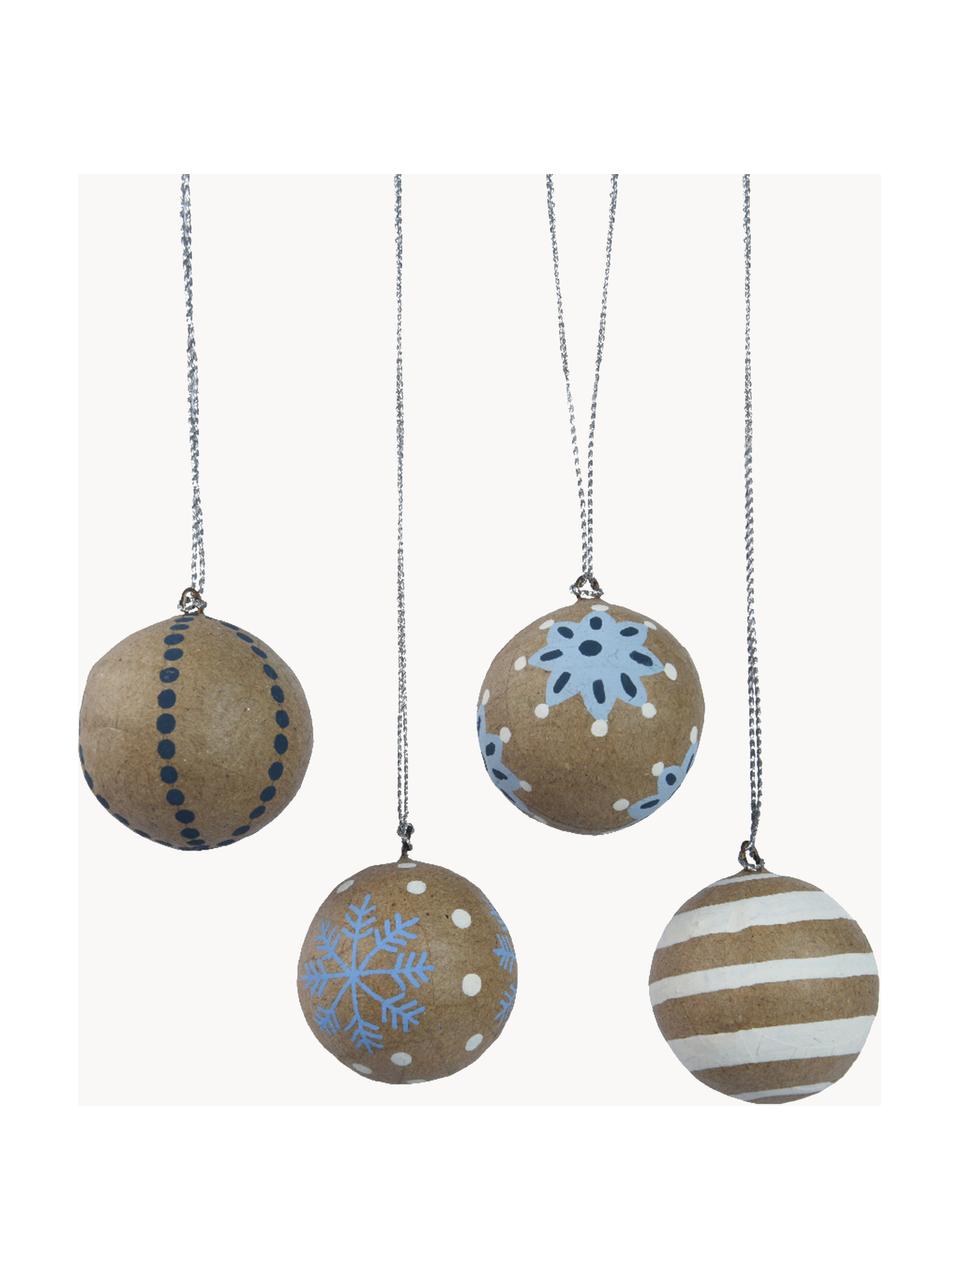 Kerstballen Moody, set van 4, Papier, Bruin, wit, blauw, Ø 3 cm